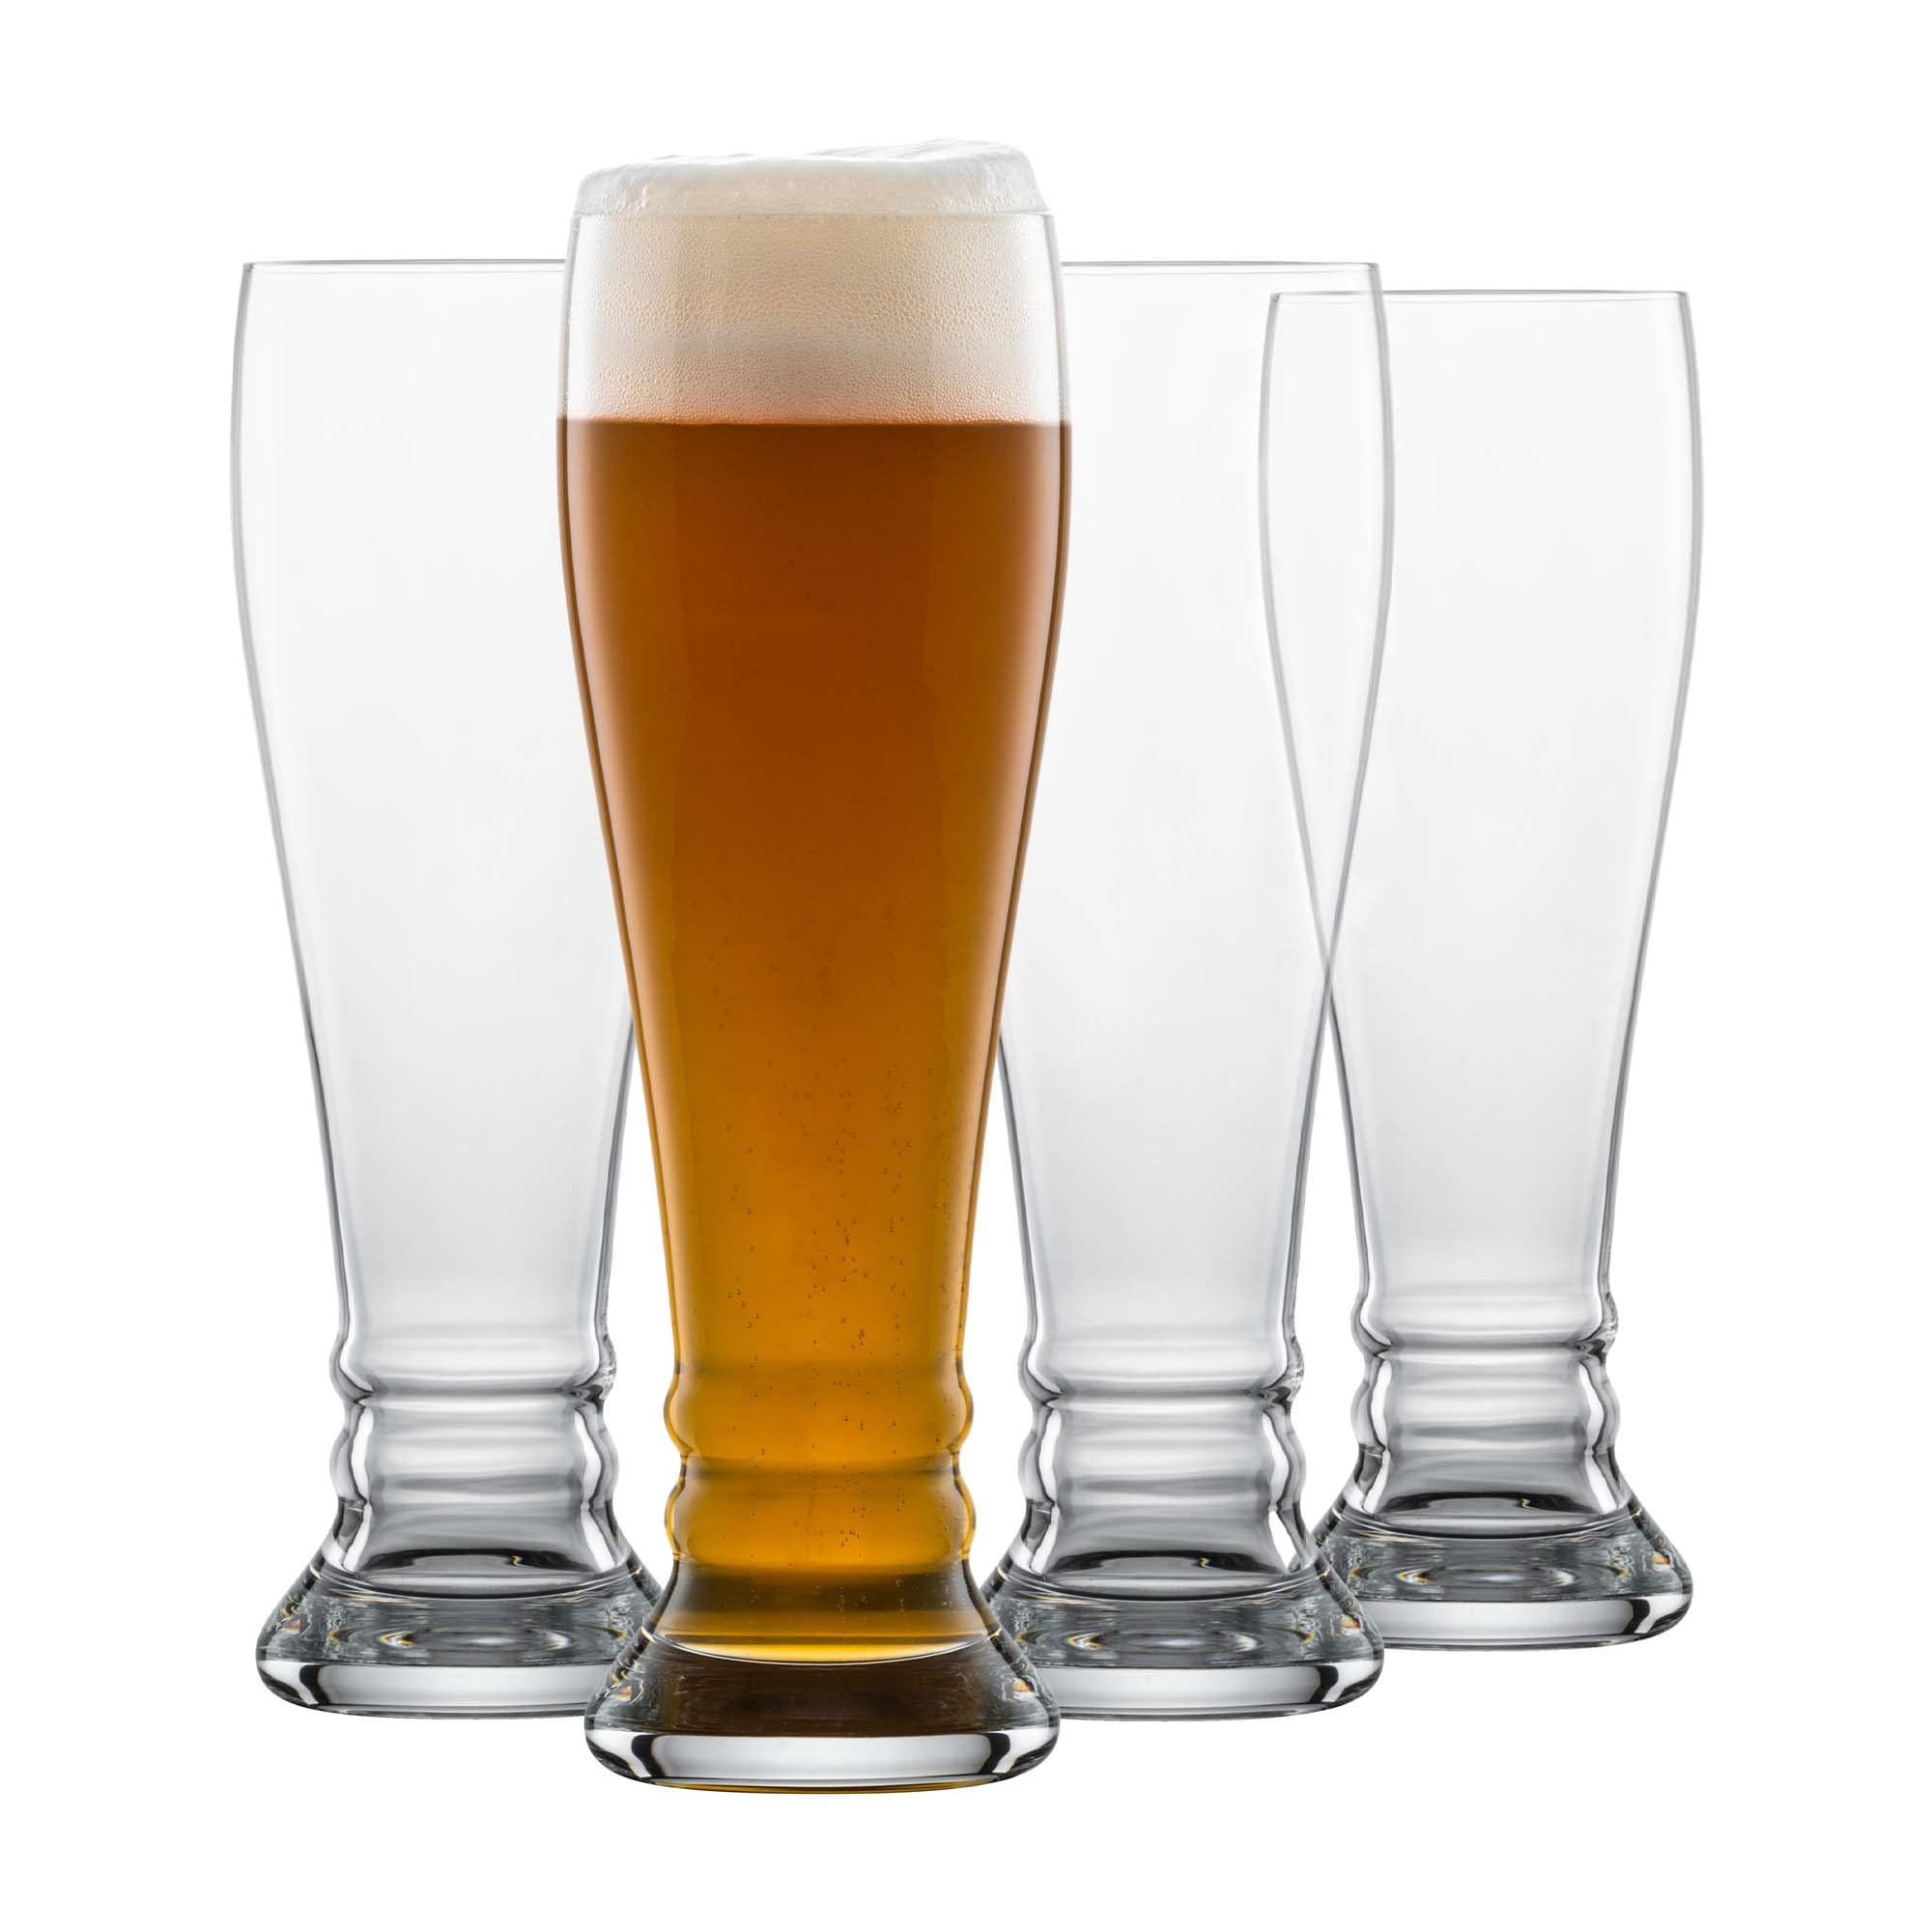 SCHOTT ZWIESEL Weizenbierglas Bavaria Beer Basic 0,5 l (4er-Set), formschöne Weizengläser für Weizenbier, spülmaschinenfeste Tritan-Kristallgläser, Made in Germany (Art.-Nr. 130004)